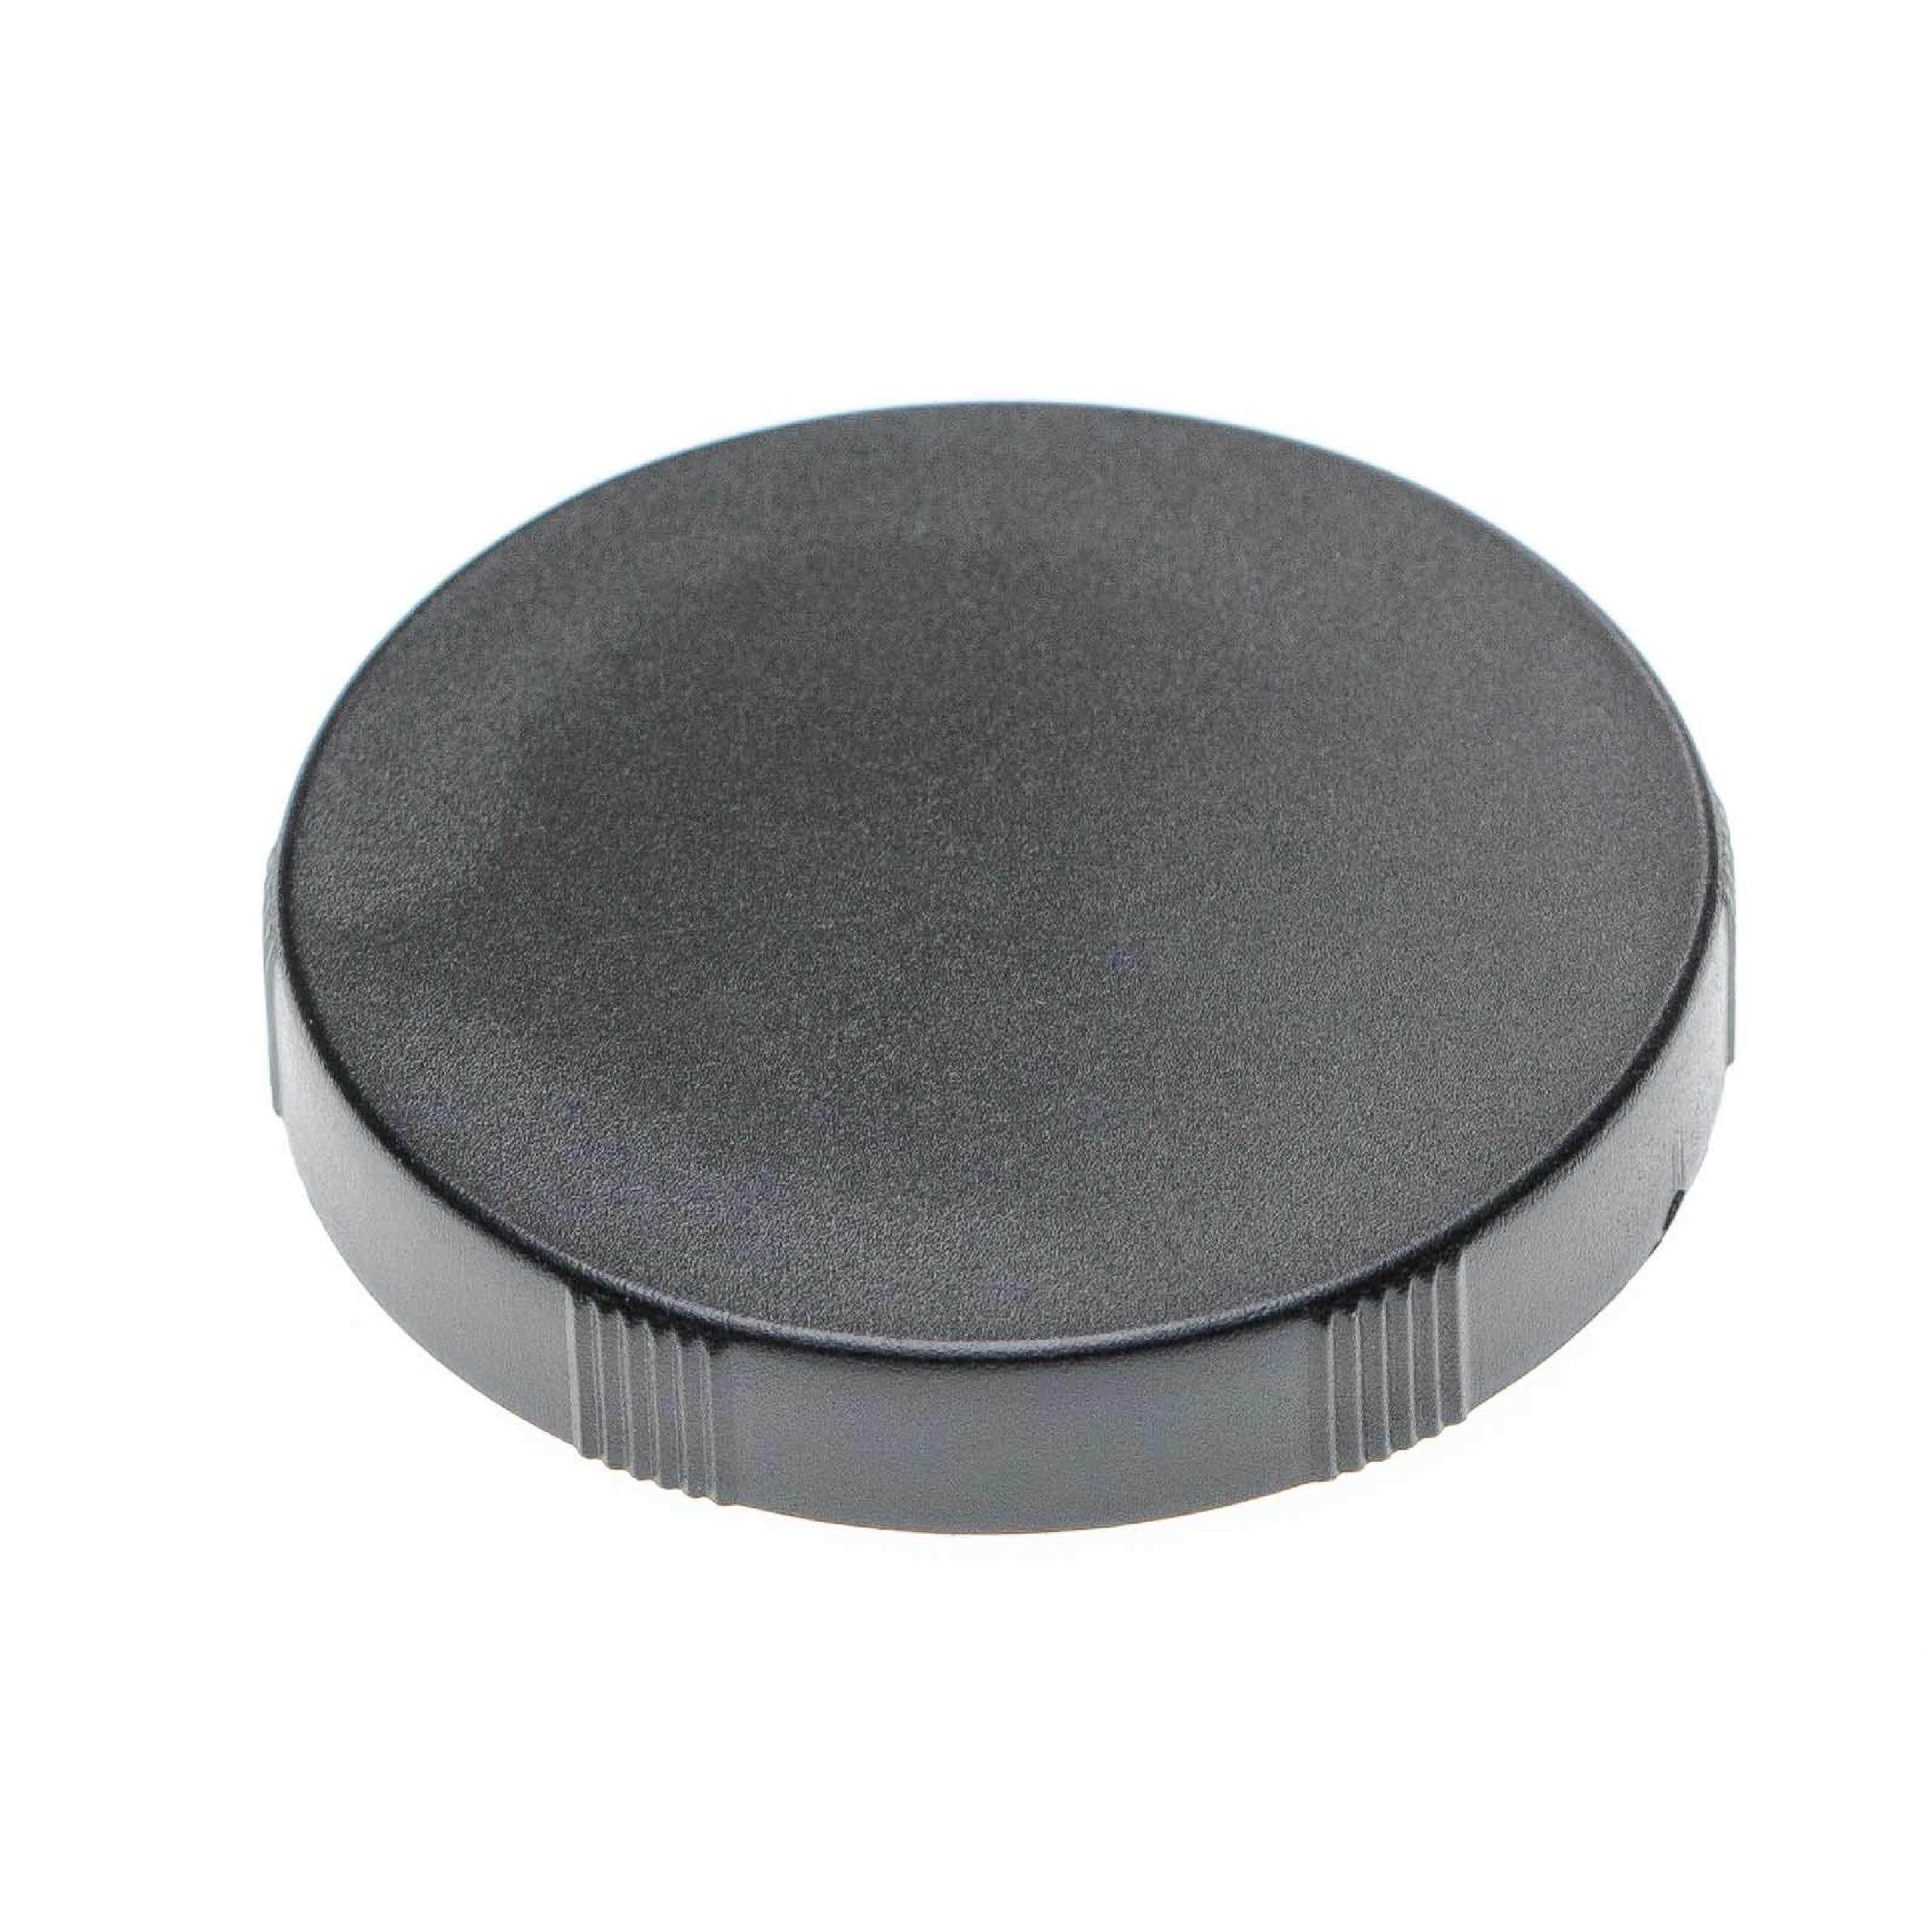 Objektivdeckel passend für Fernglas-Objektive mit 45 mm Durchmesser - Schwarz, Aufsteckbar